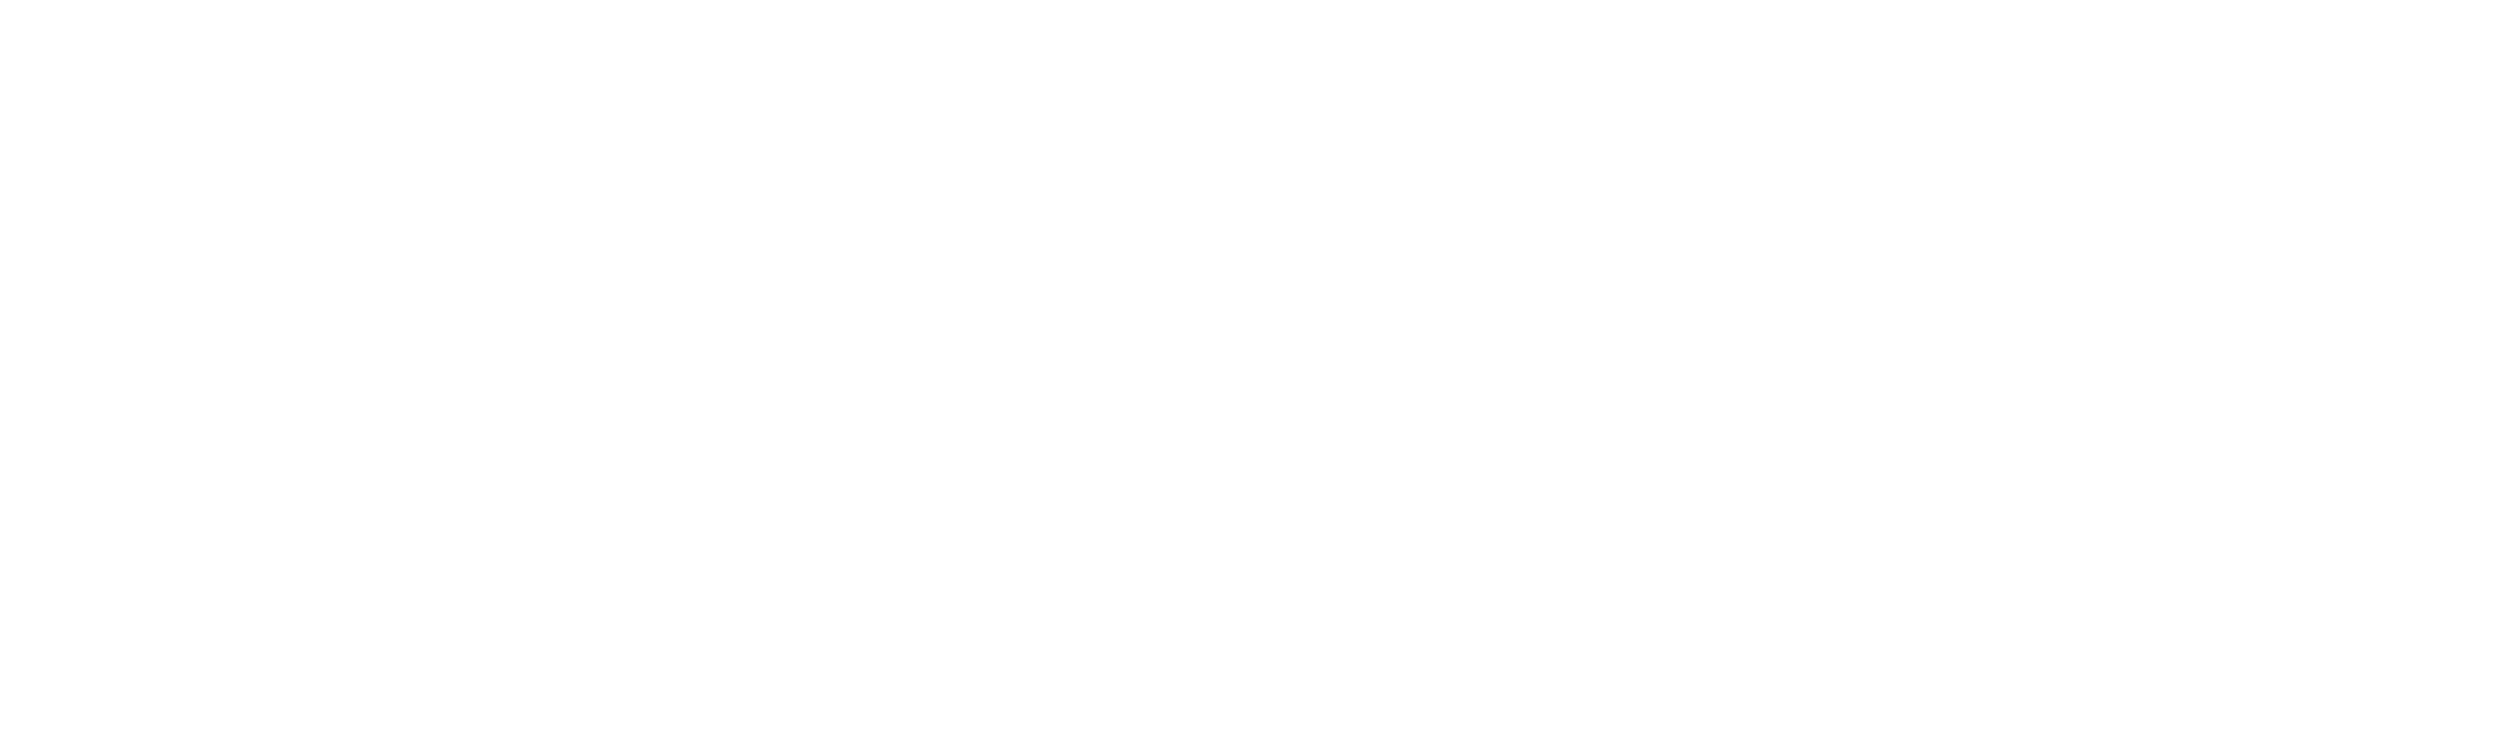 Kia_white_logo